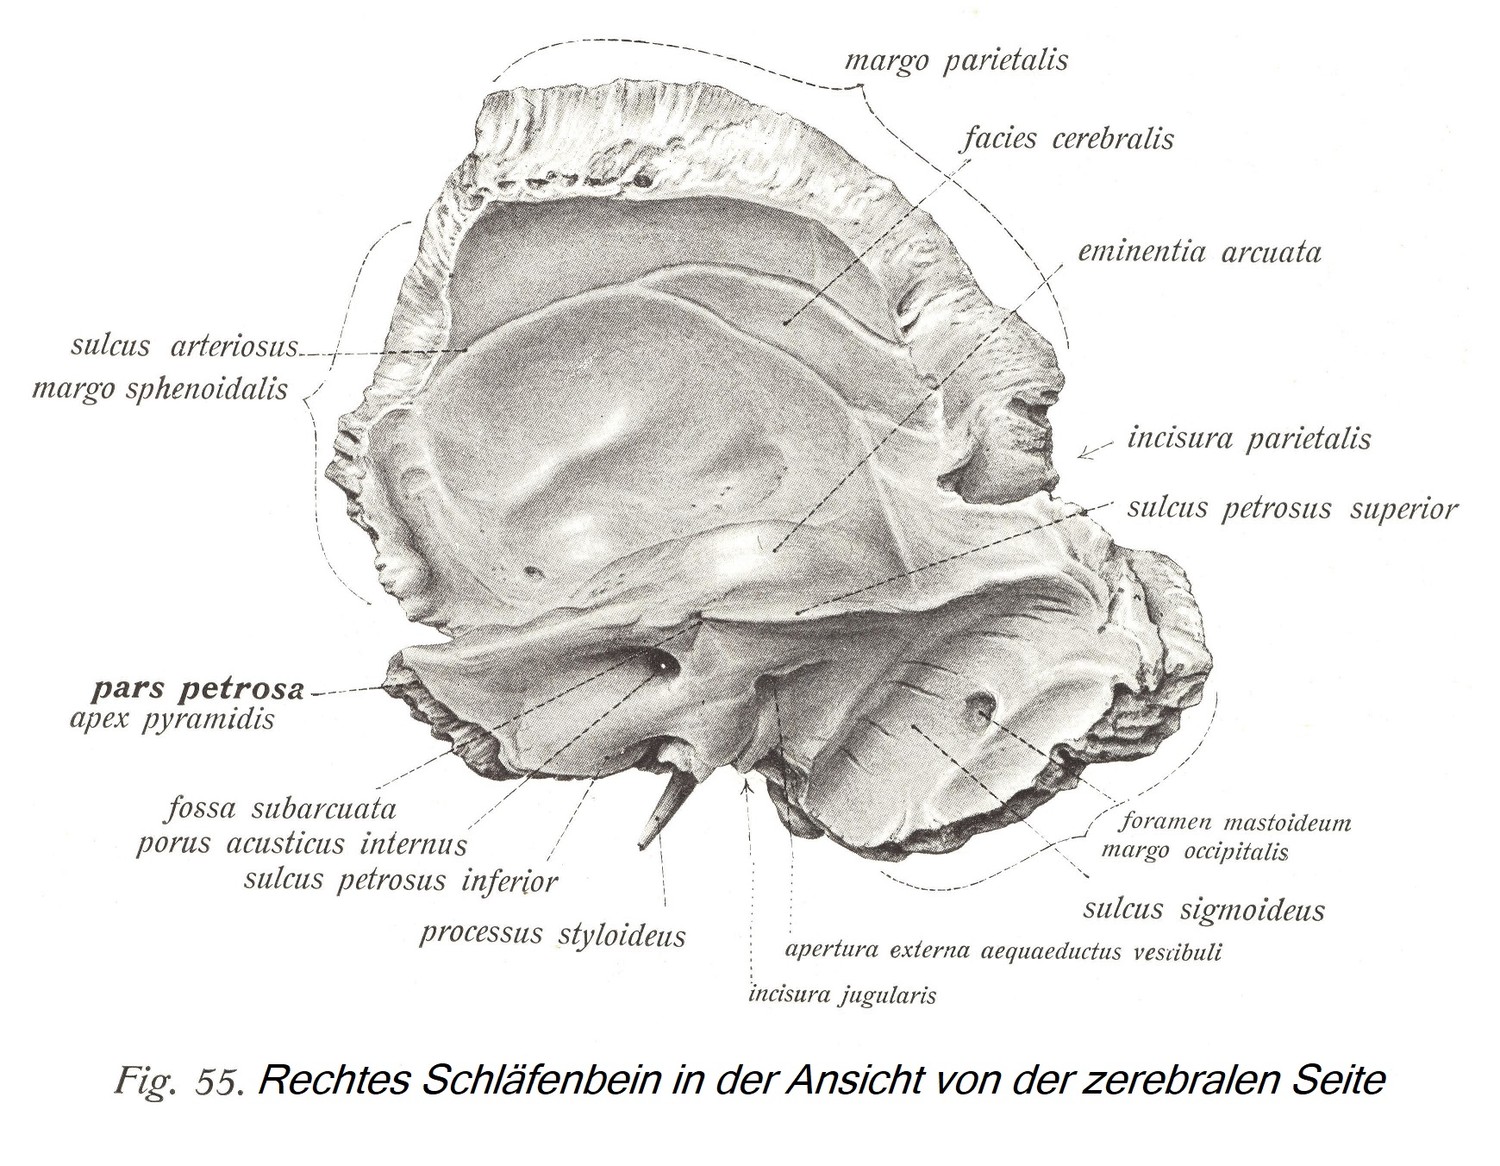 Правая височная кость, вид с мозговой стороны